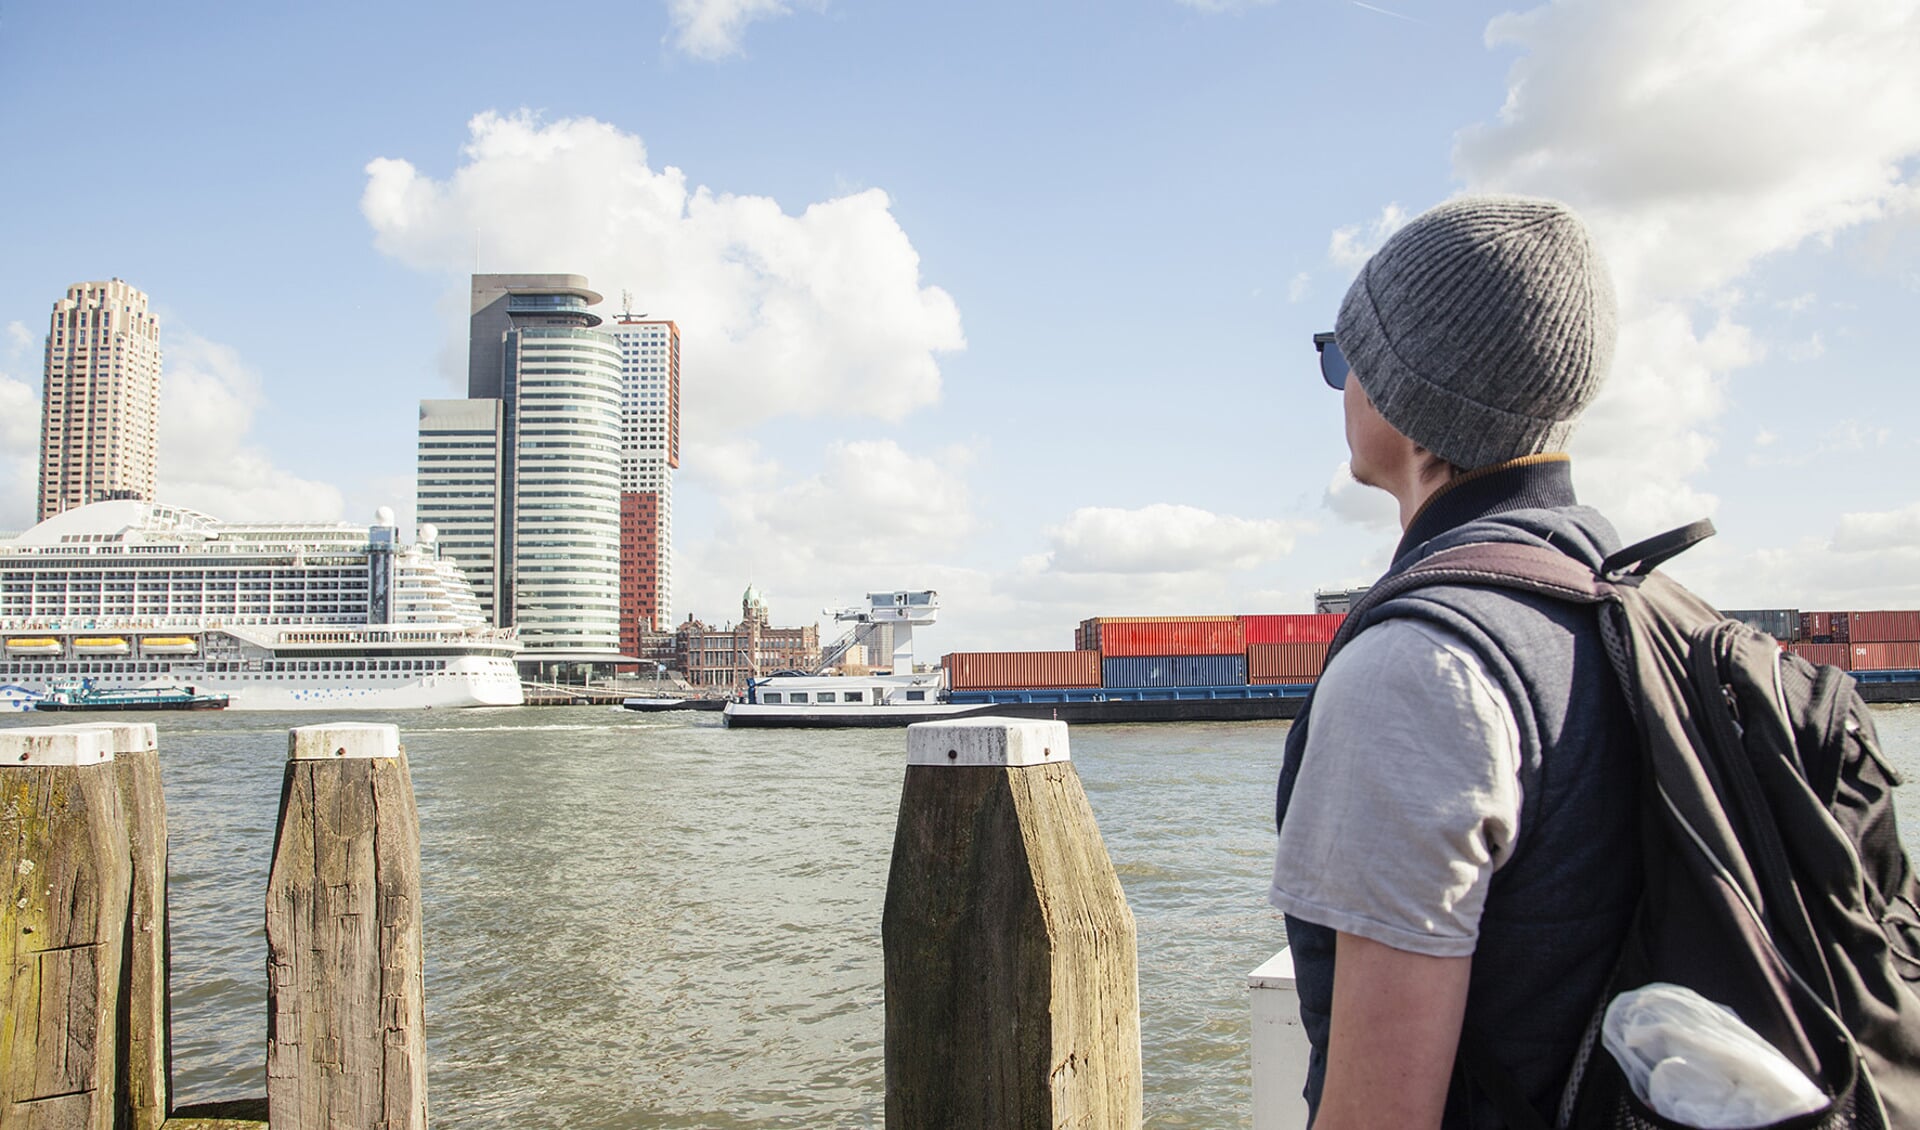 Uitkijken over het water in Rotterdam. Foto: Stockfoto